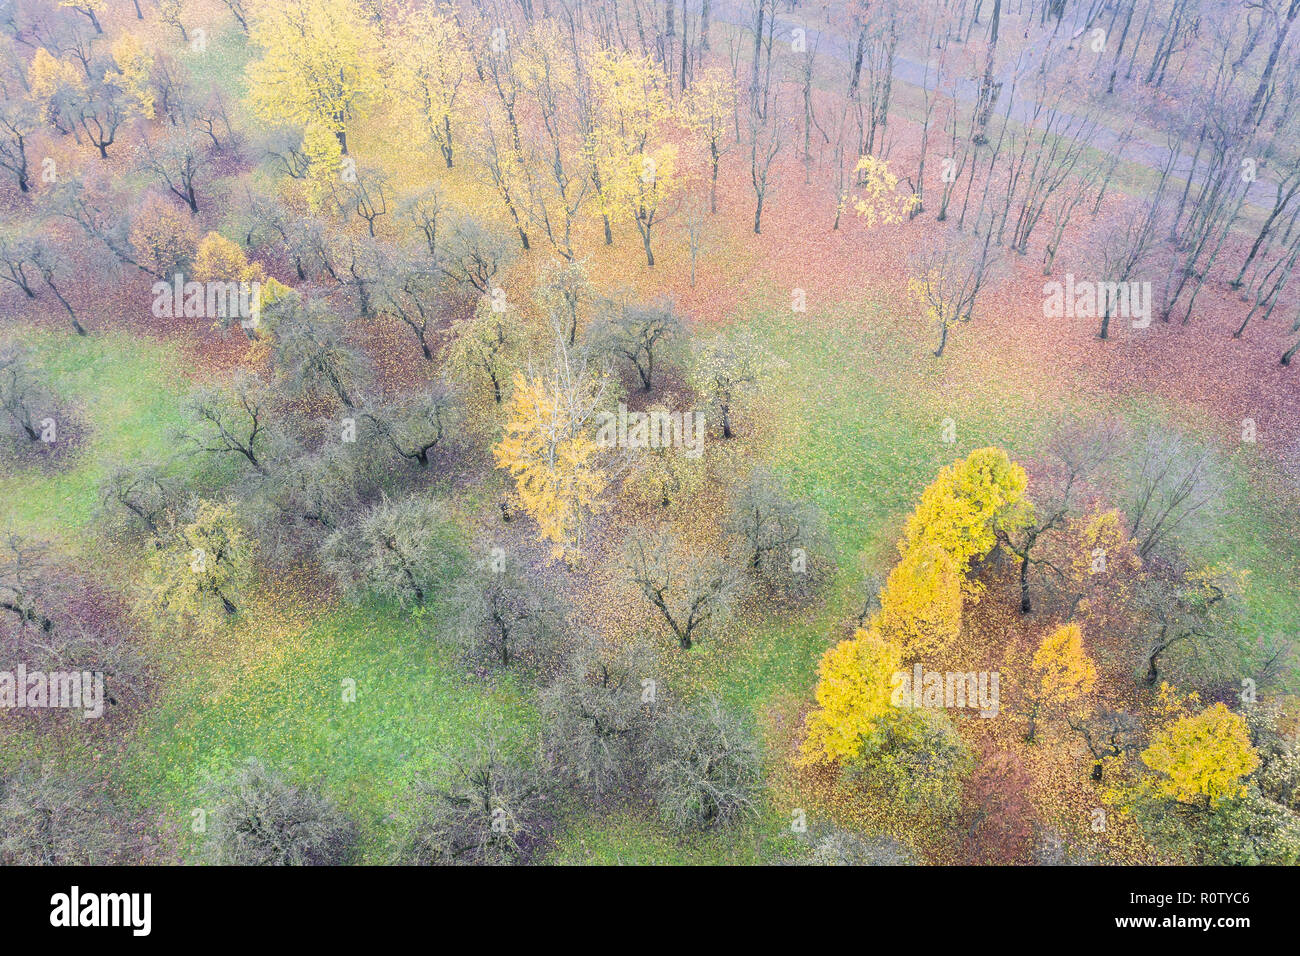 Fantástico paisaje con árboles multicolores en otoño niebla park vista aérea. Foto de stock